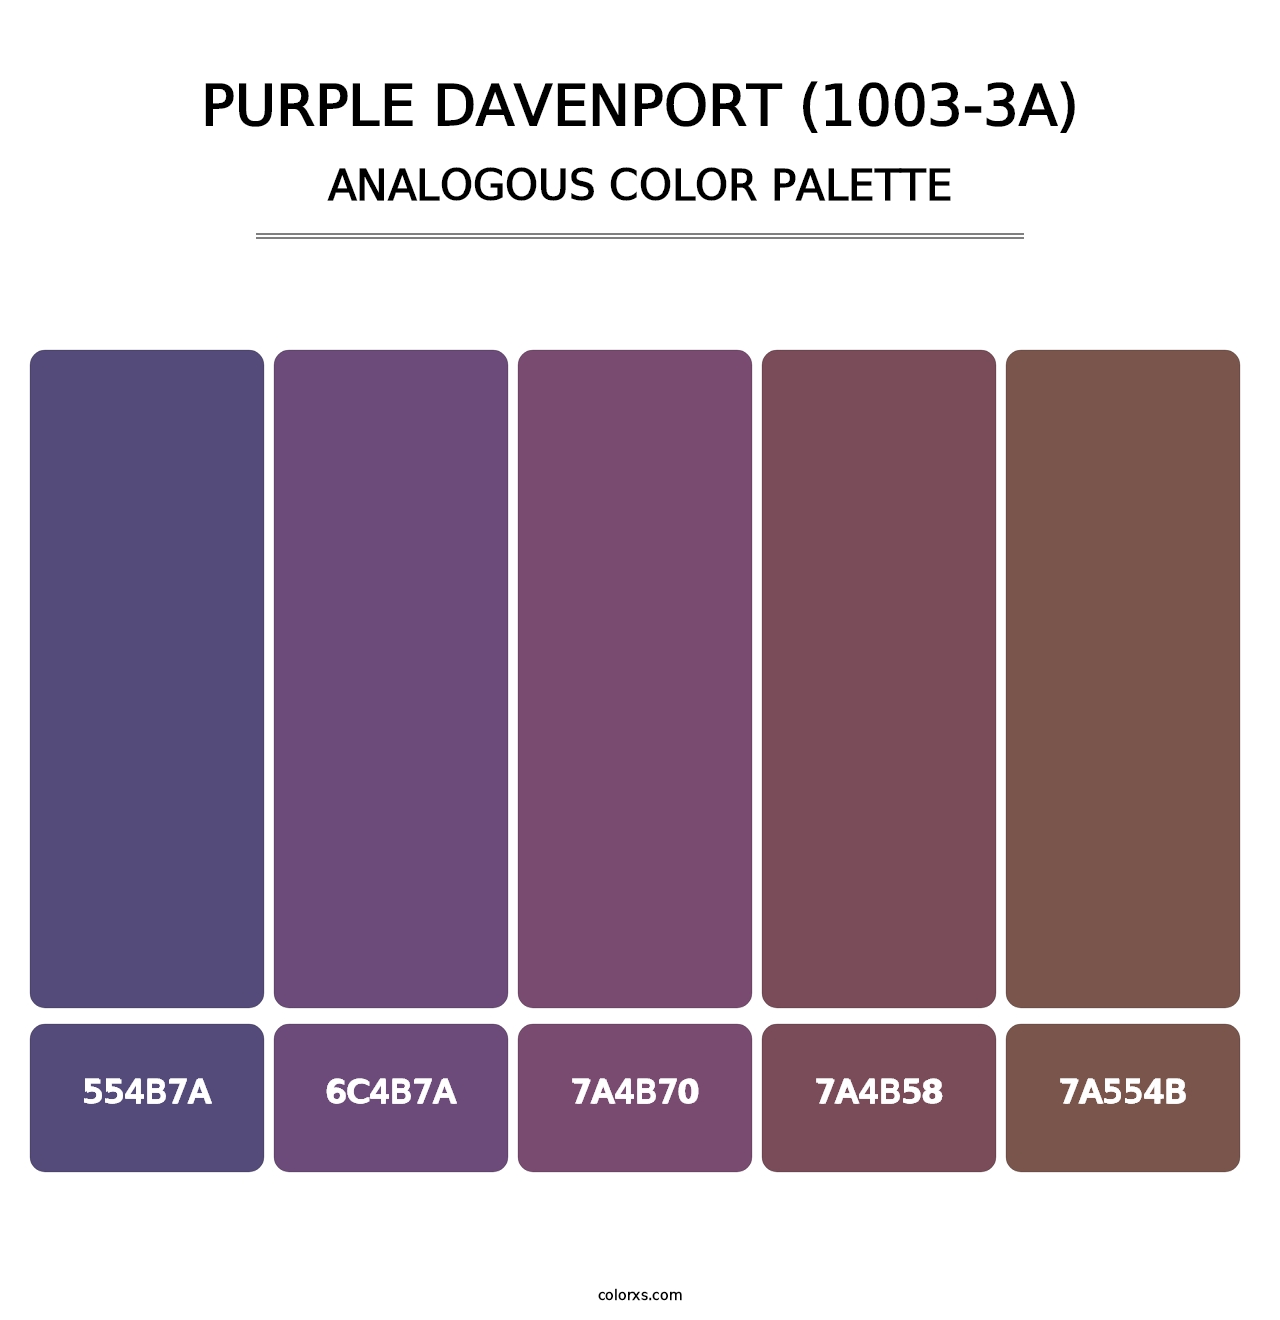 Purple Davenport (1003-3A) - Analogous Color Palette